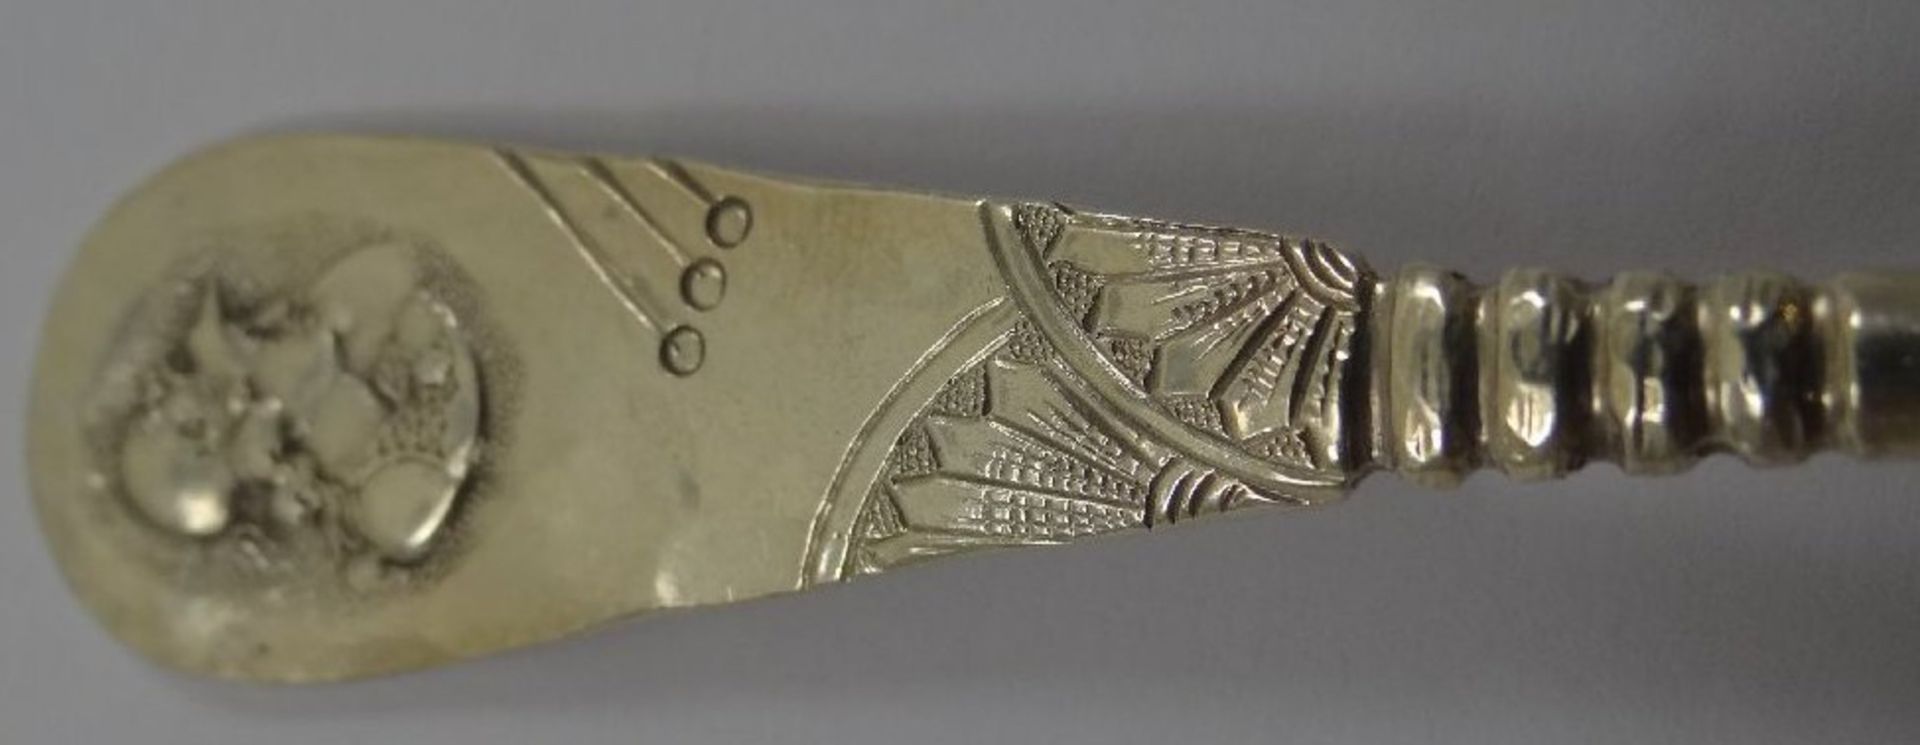 George W. Shiebler & Co., New York, kl. Löffel mit Etruskerkopf um 1900, Silber,S-925- mit - Bild 3 aus 5